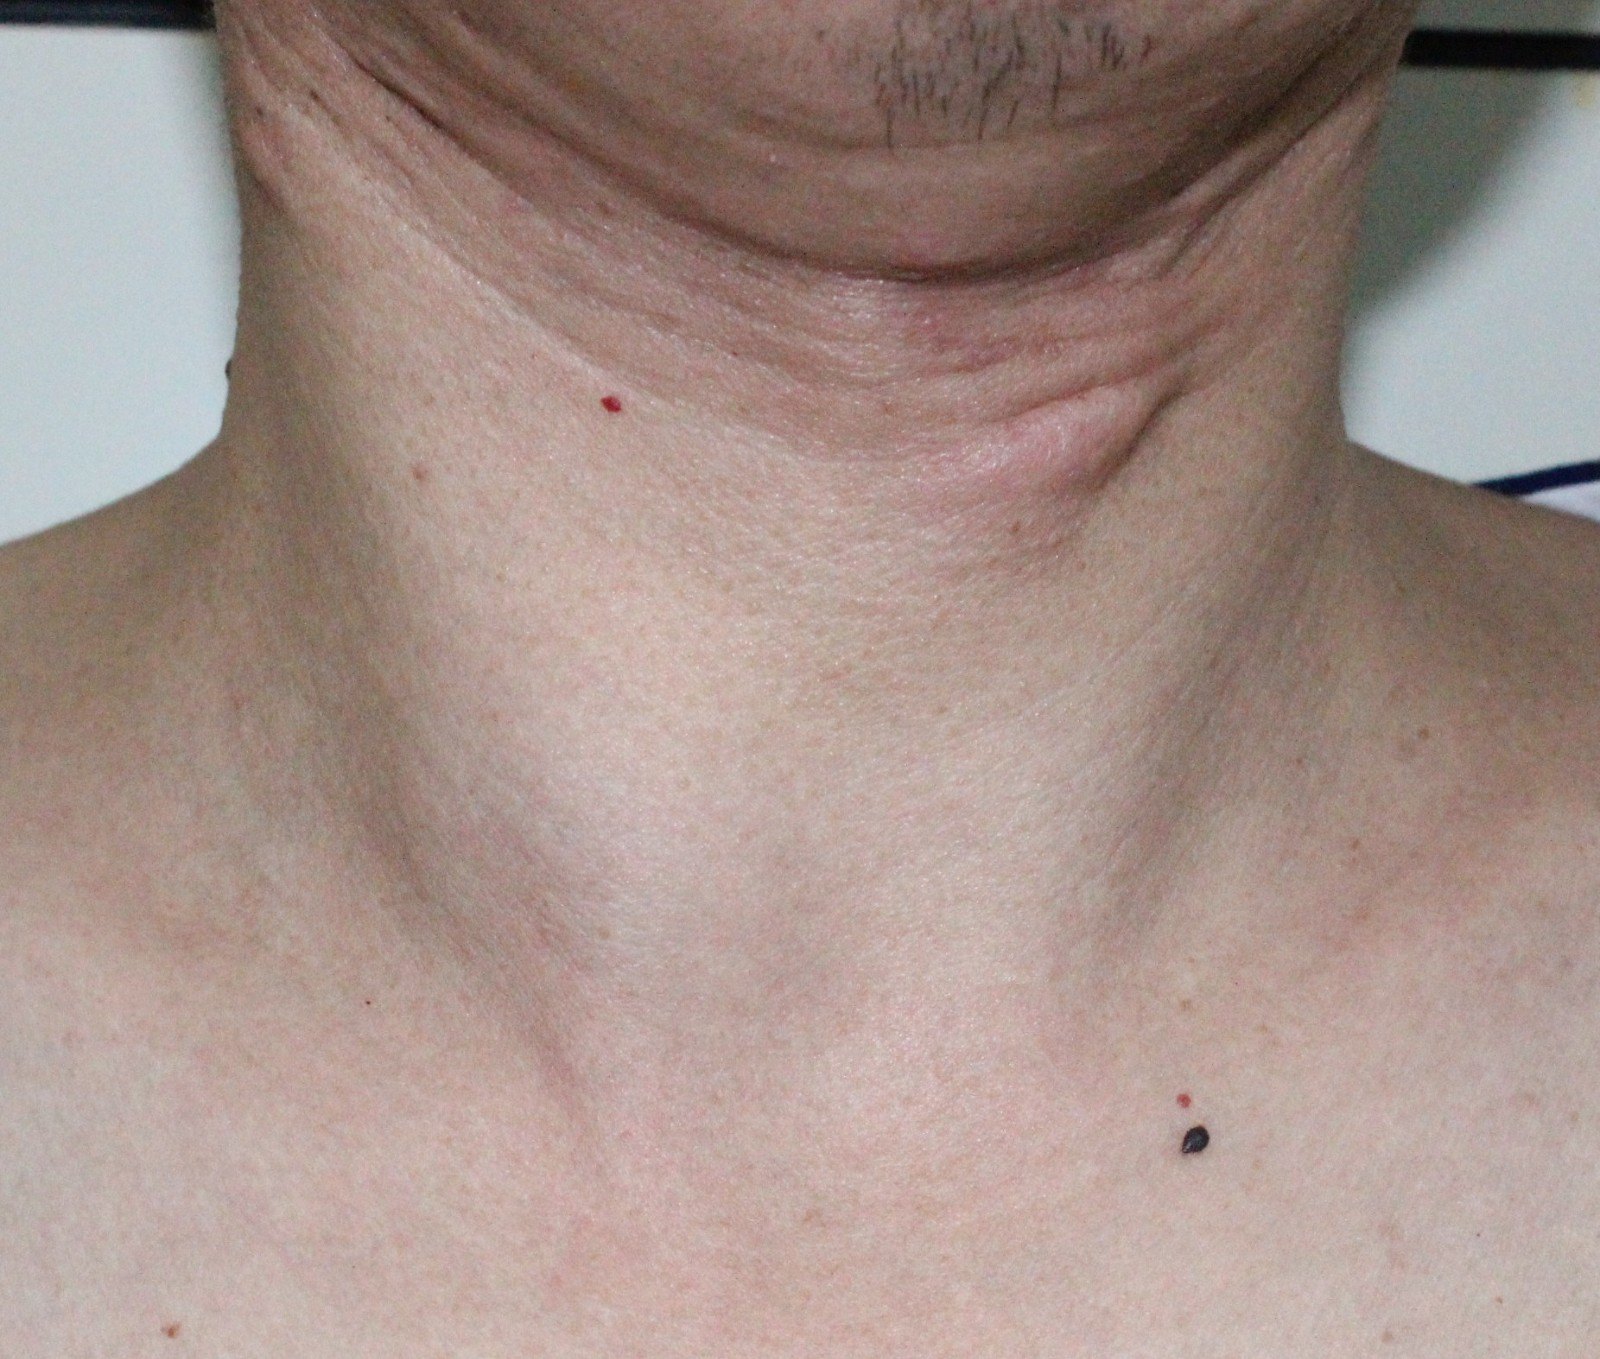 甲状腺结节图片 男性图片